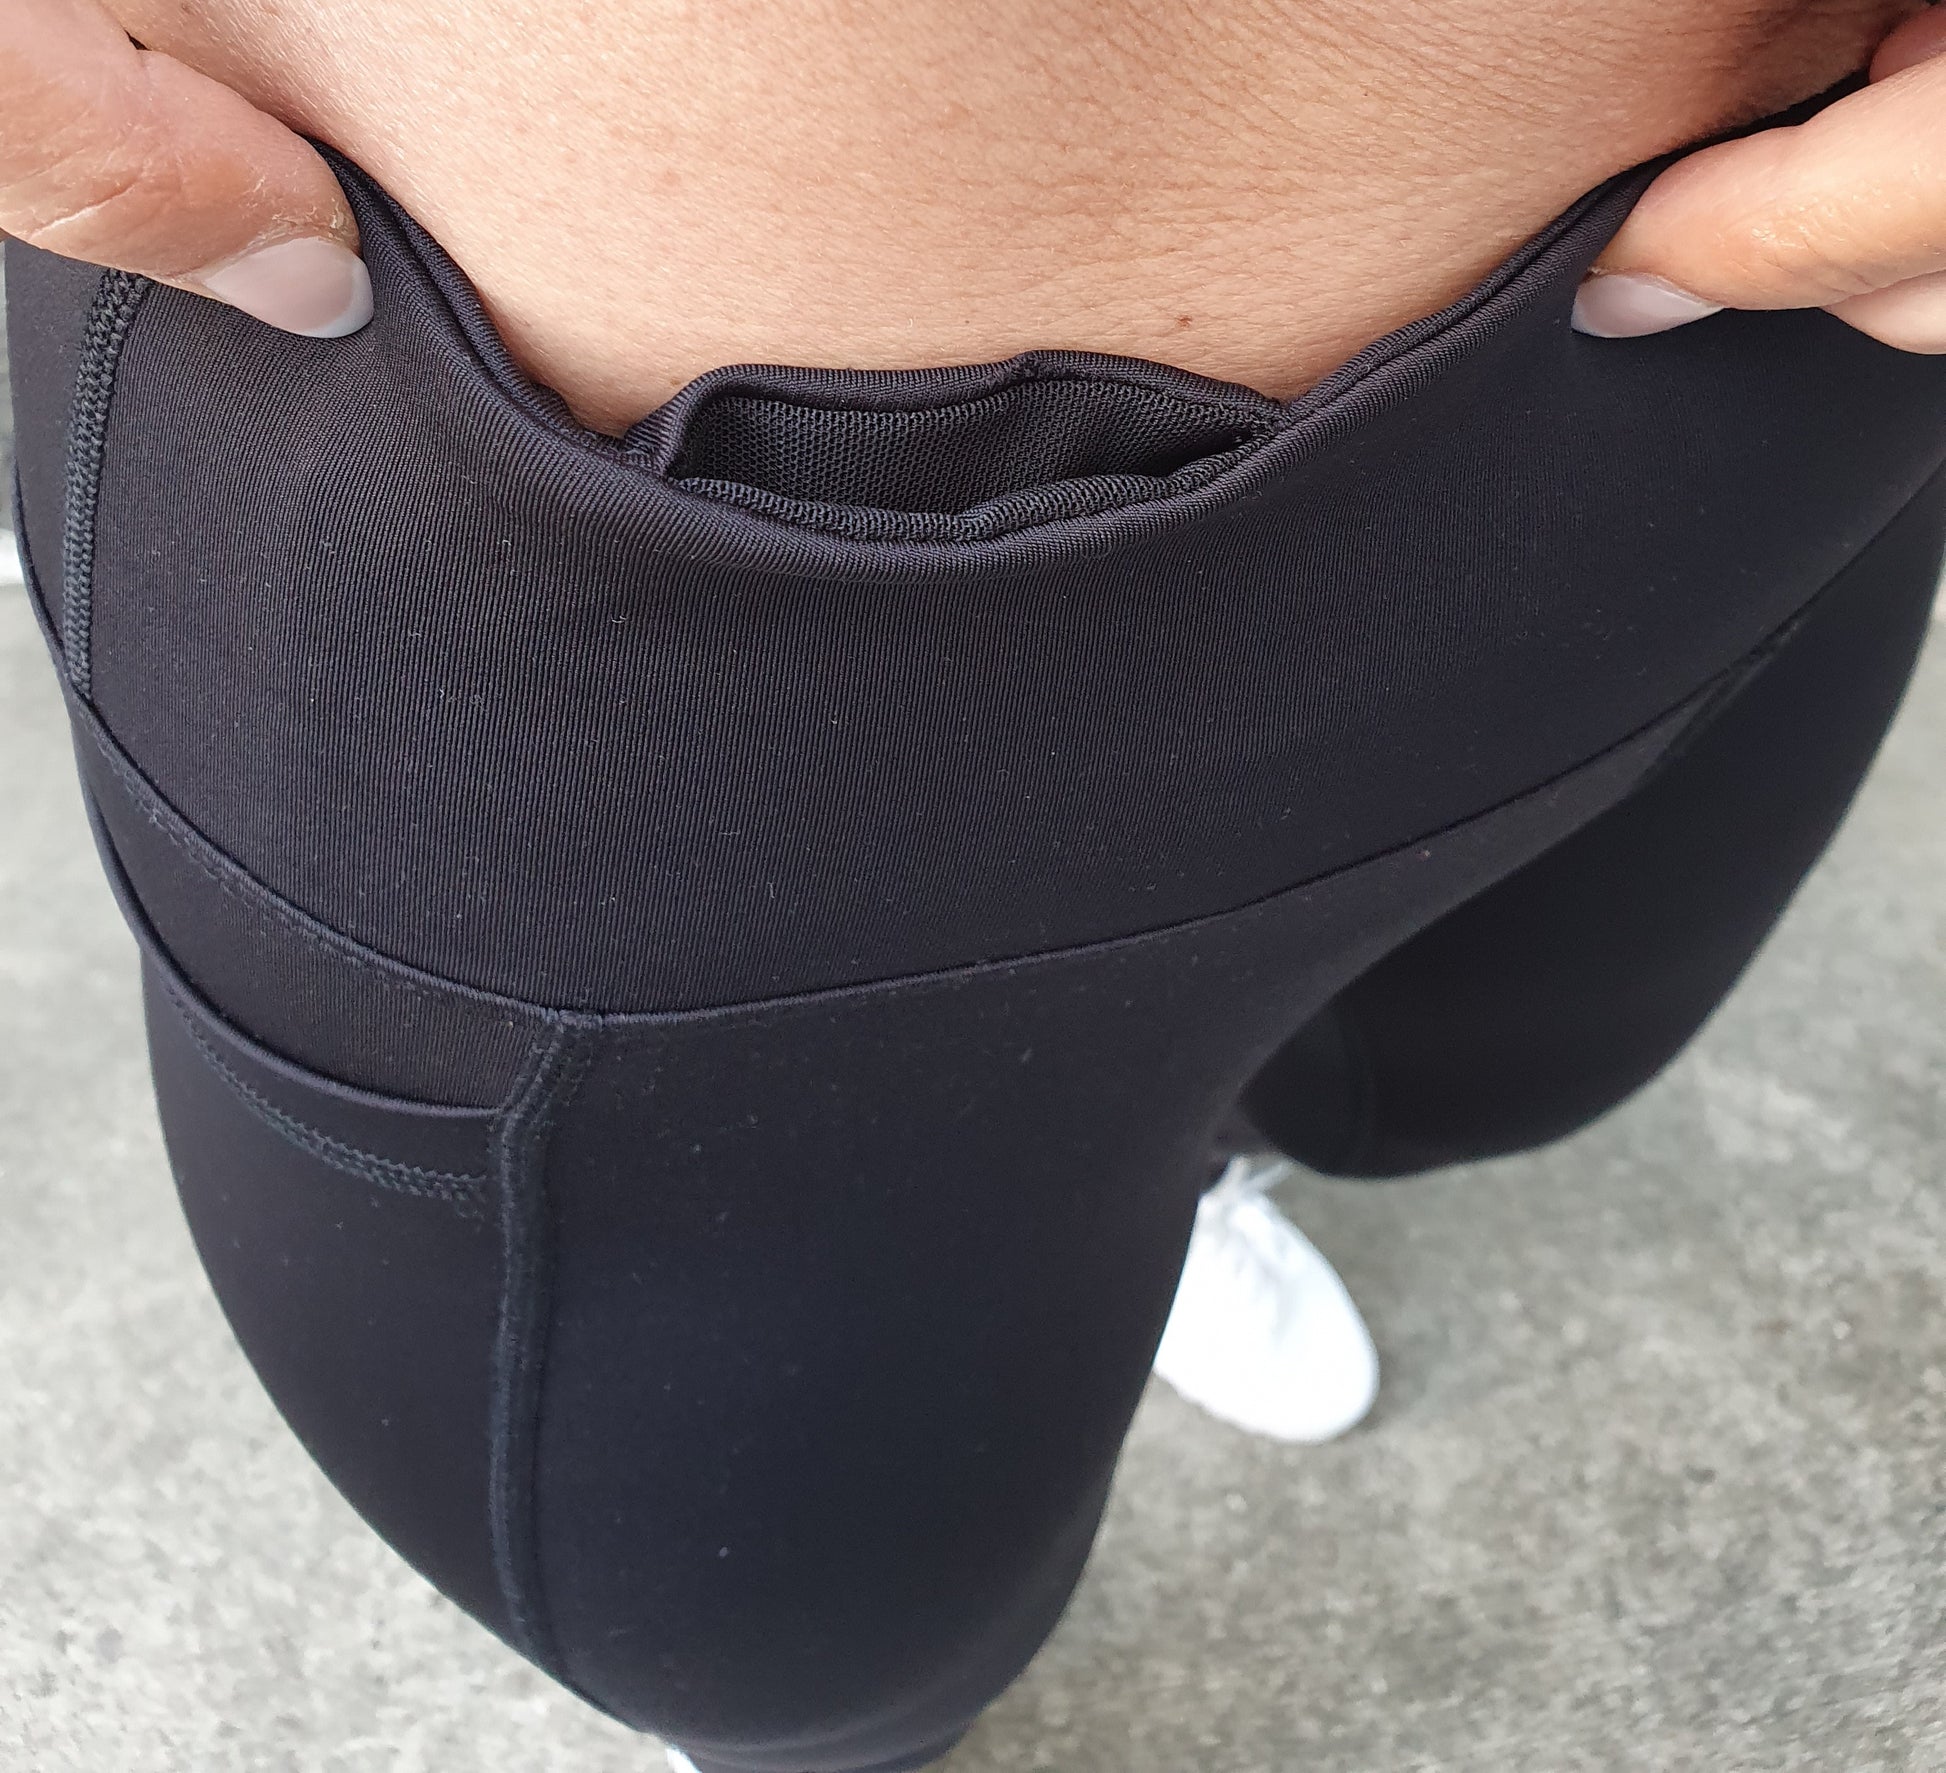 Gmaxx full length active leggings, 2 x Pockets, high waisted leggings, leggings for women, similar to Nike Leggings. Similar to Lulu Leggings.